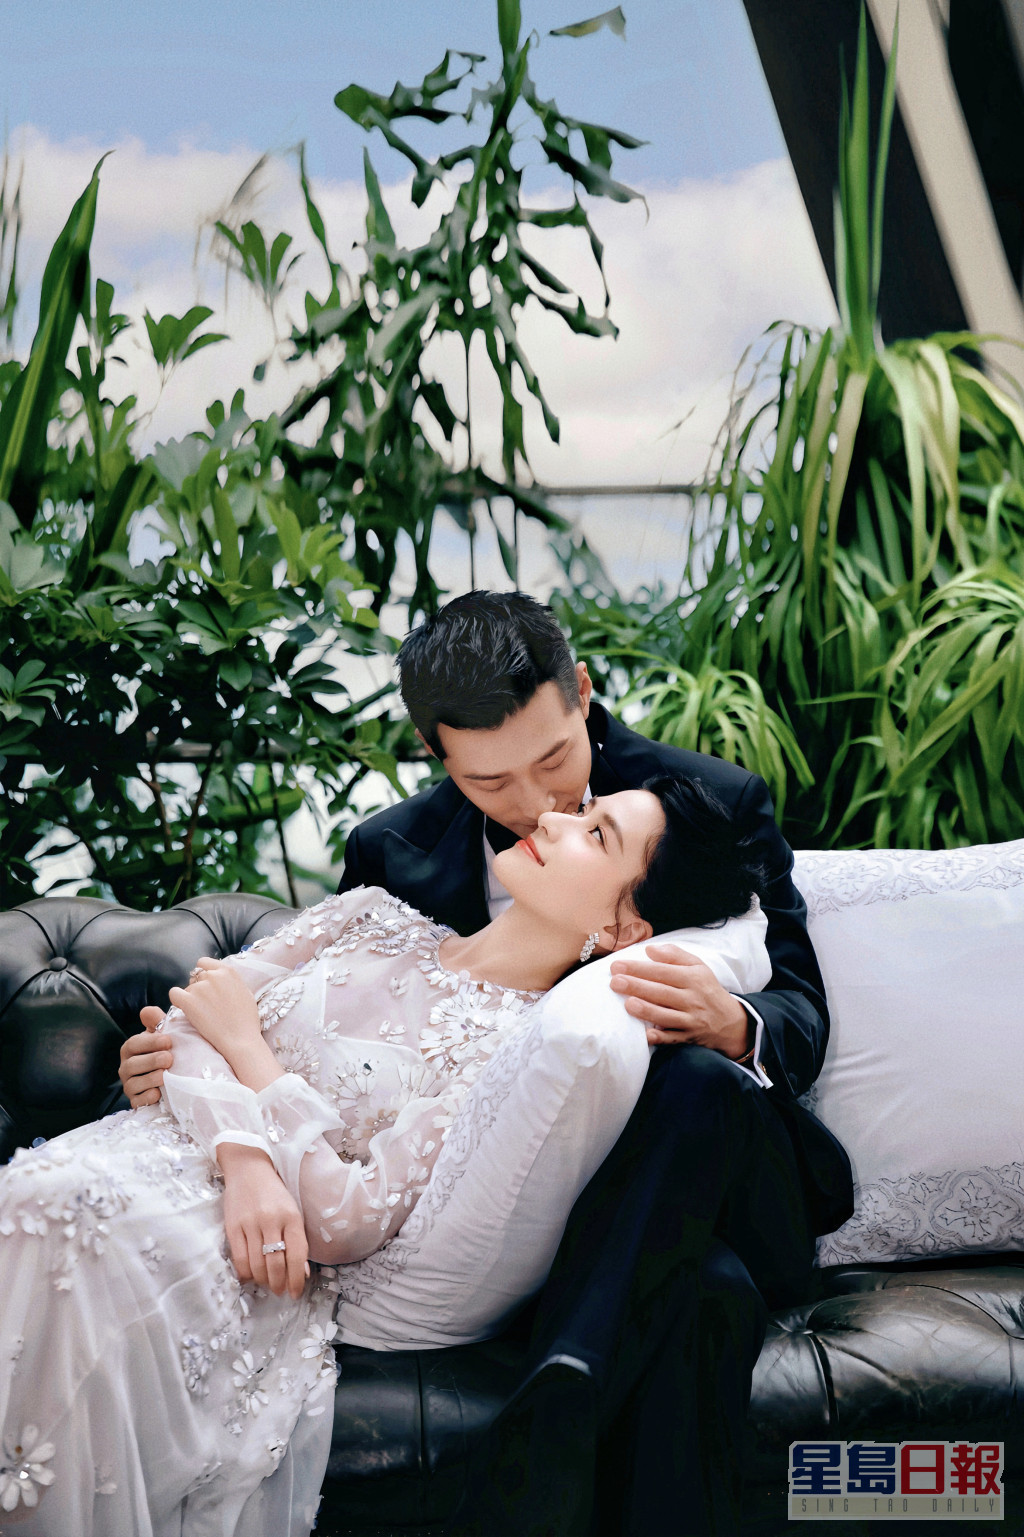 何超莲上月中与窦骁在峇里岛举行世纪婚礼。